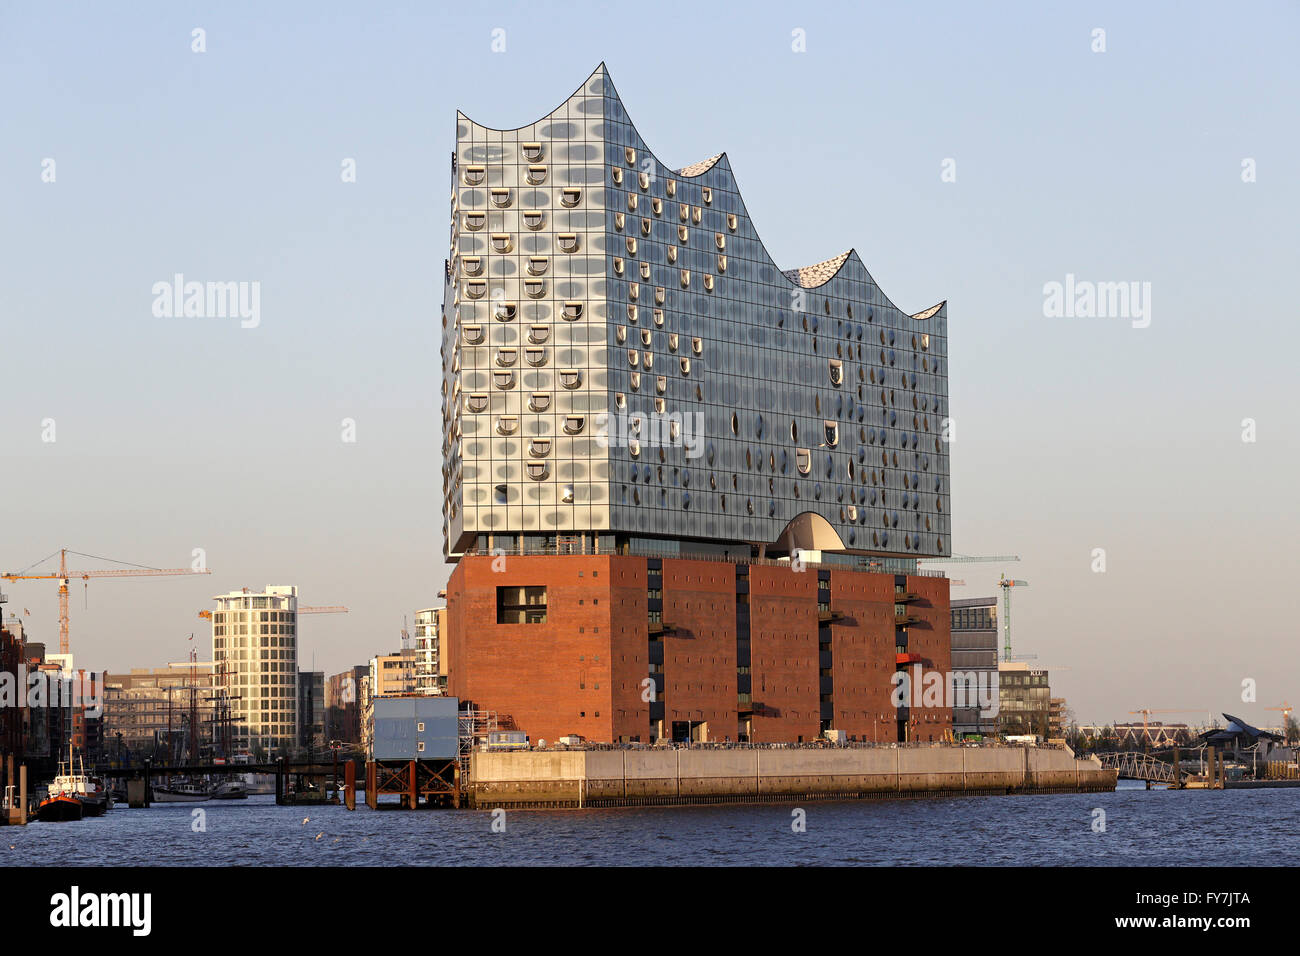 Elbe Philharmonic Hall, Harbor City, Hamburg, Germany Stock Photo ...